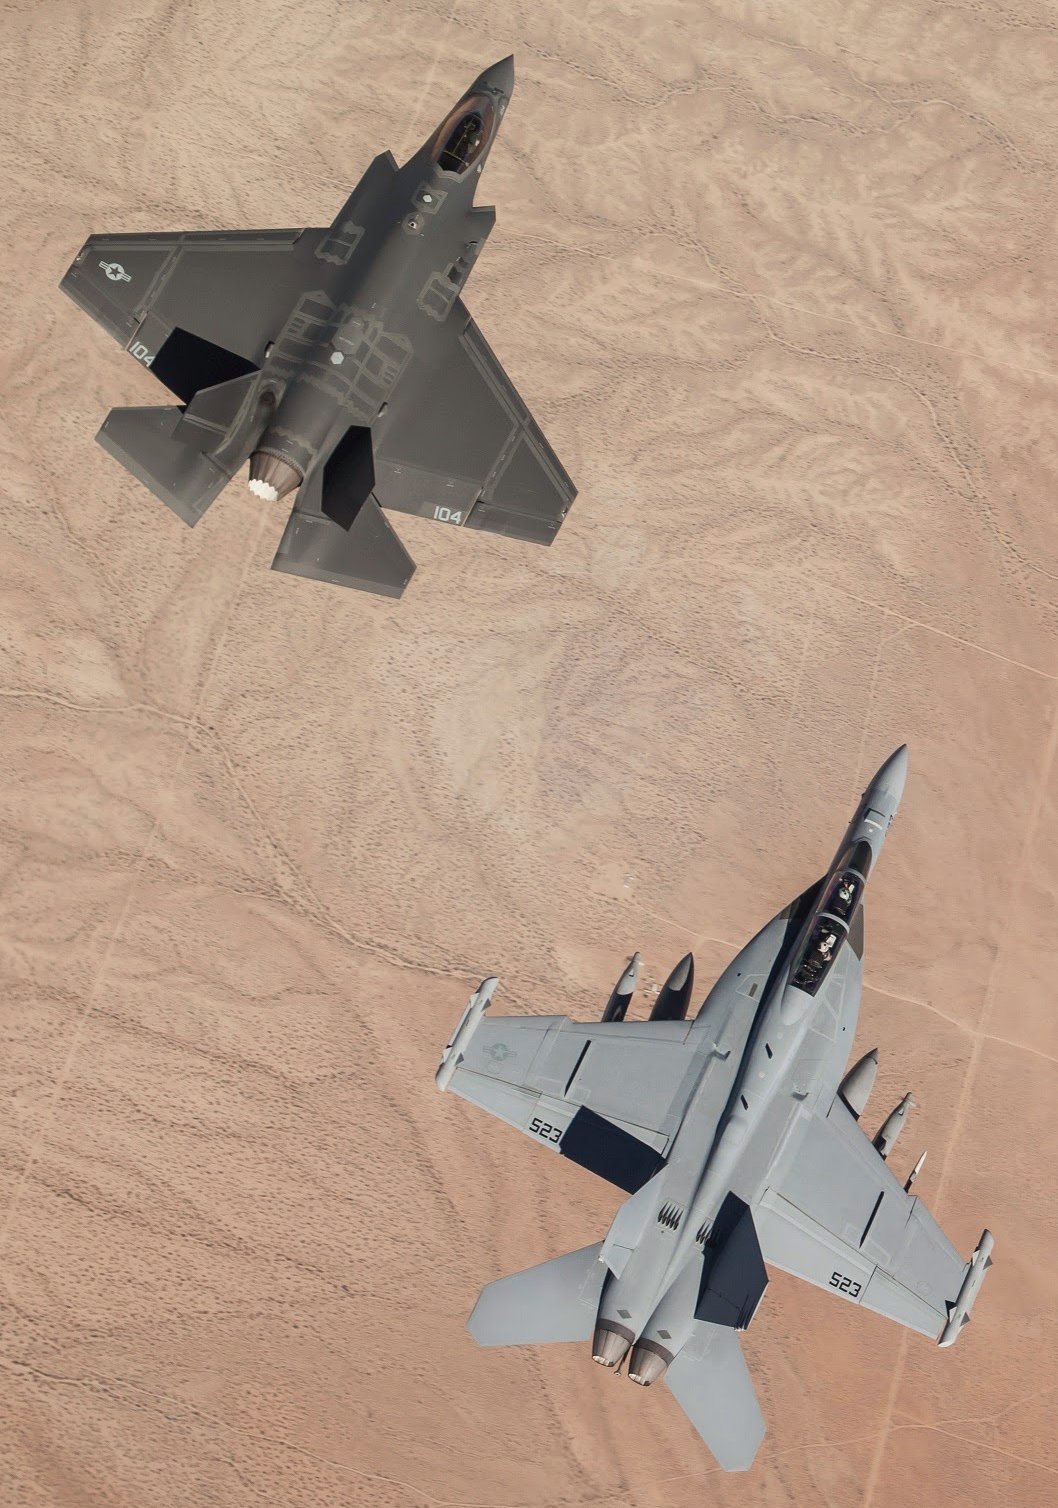 1058x1508, 307 Kb / самолёт, пустыня, истребитель-бомбардировщик, F-35, F/A-18, военщина